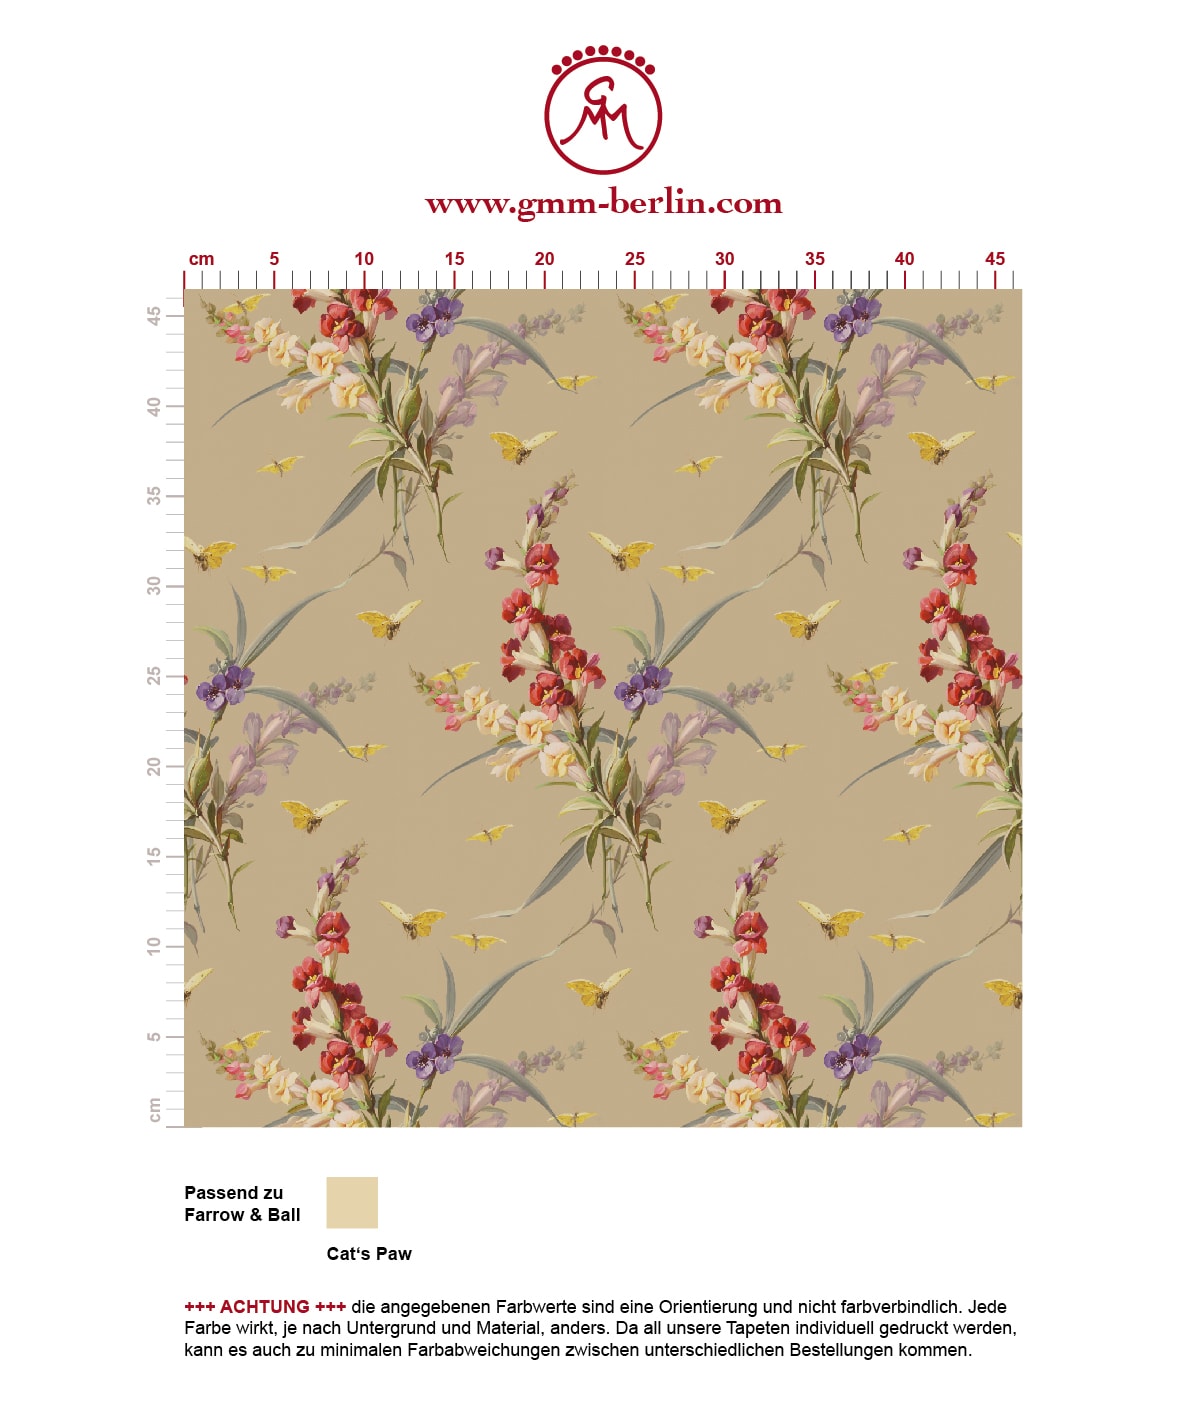 "Blissful Spring" - Edle Vintage Blüten Tapete mit Schmetterlingen auf beige angepasst an Farrow and Ball Wandfarben. Aus dem GMM-BERLIN.com Sortiment: Schöne Tapeten in creme Farbe